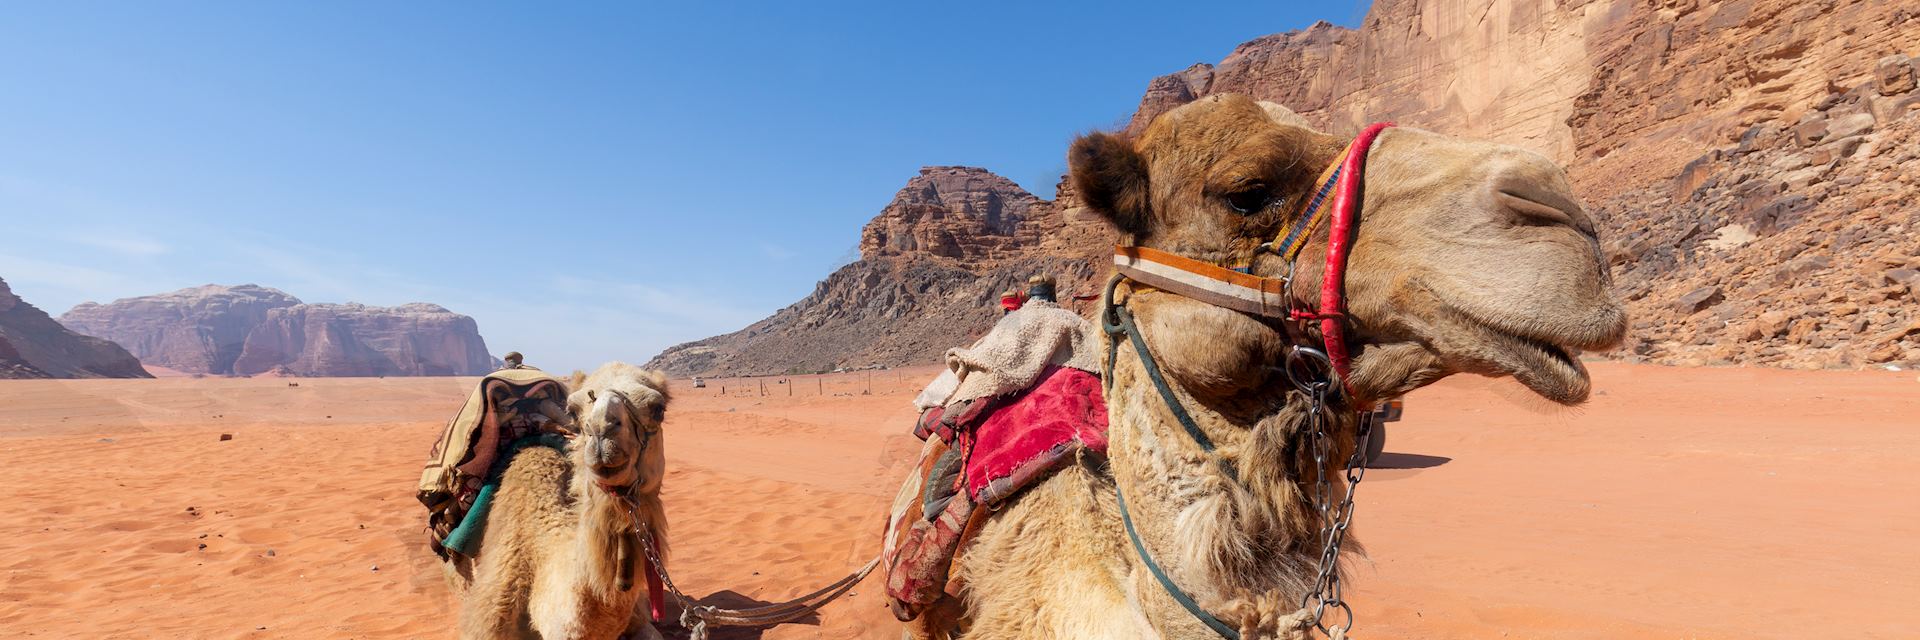 Desert transportation in Jordan